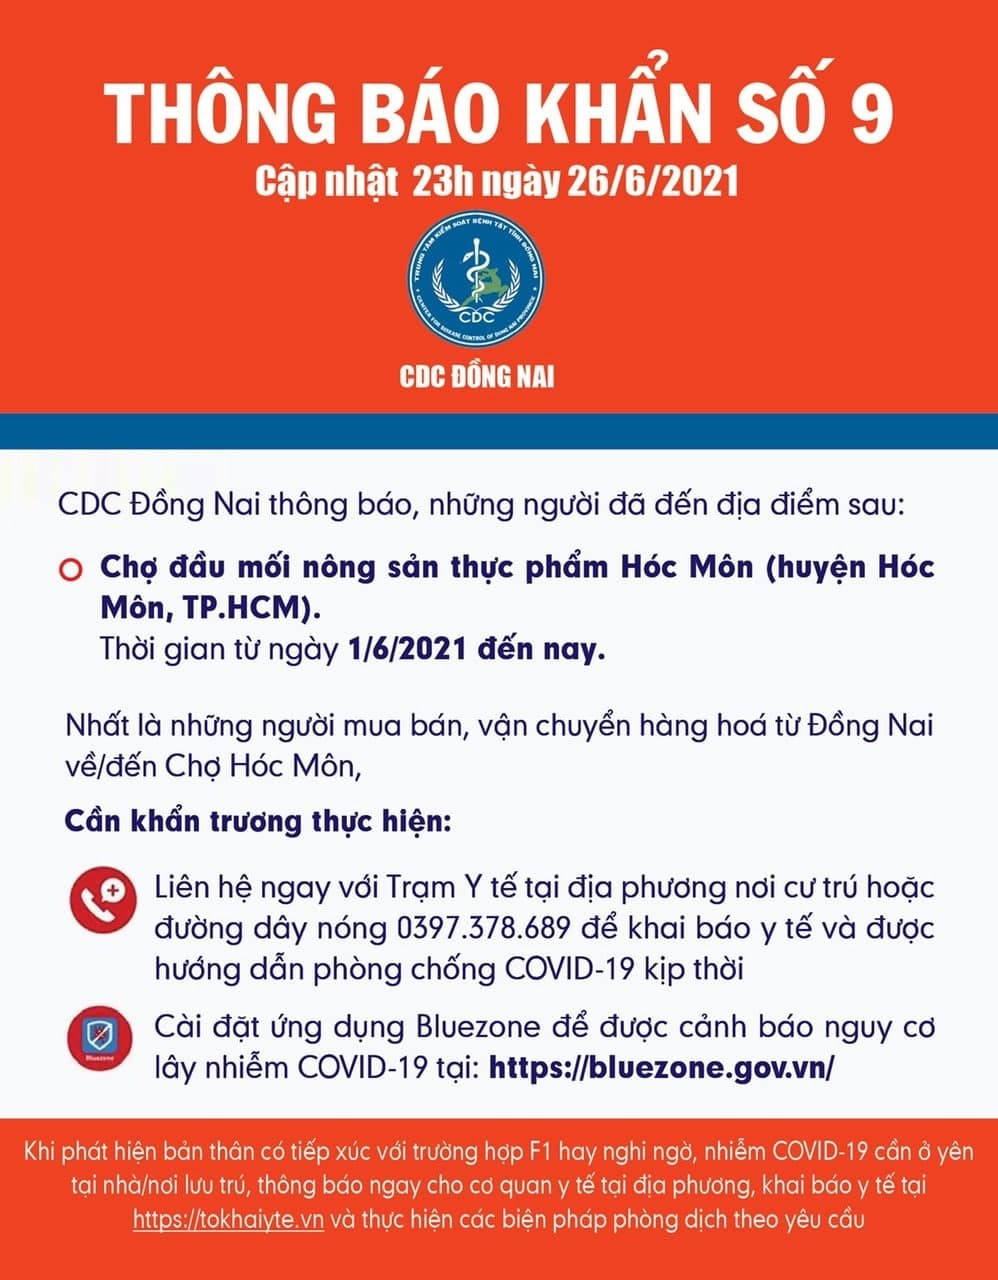 Thông báo của CDC Đồng Nai.